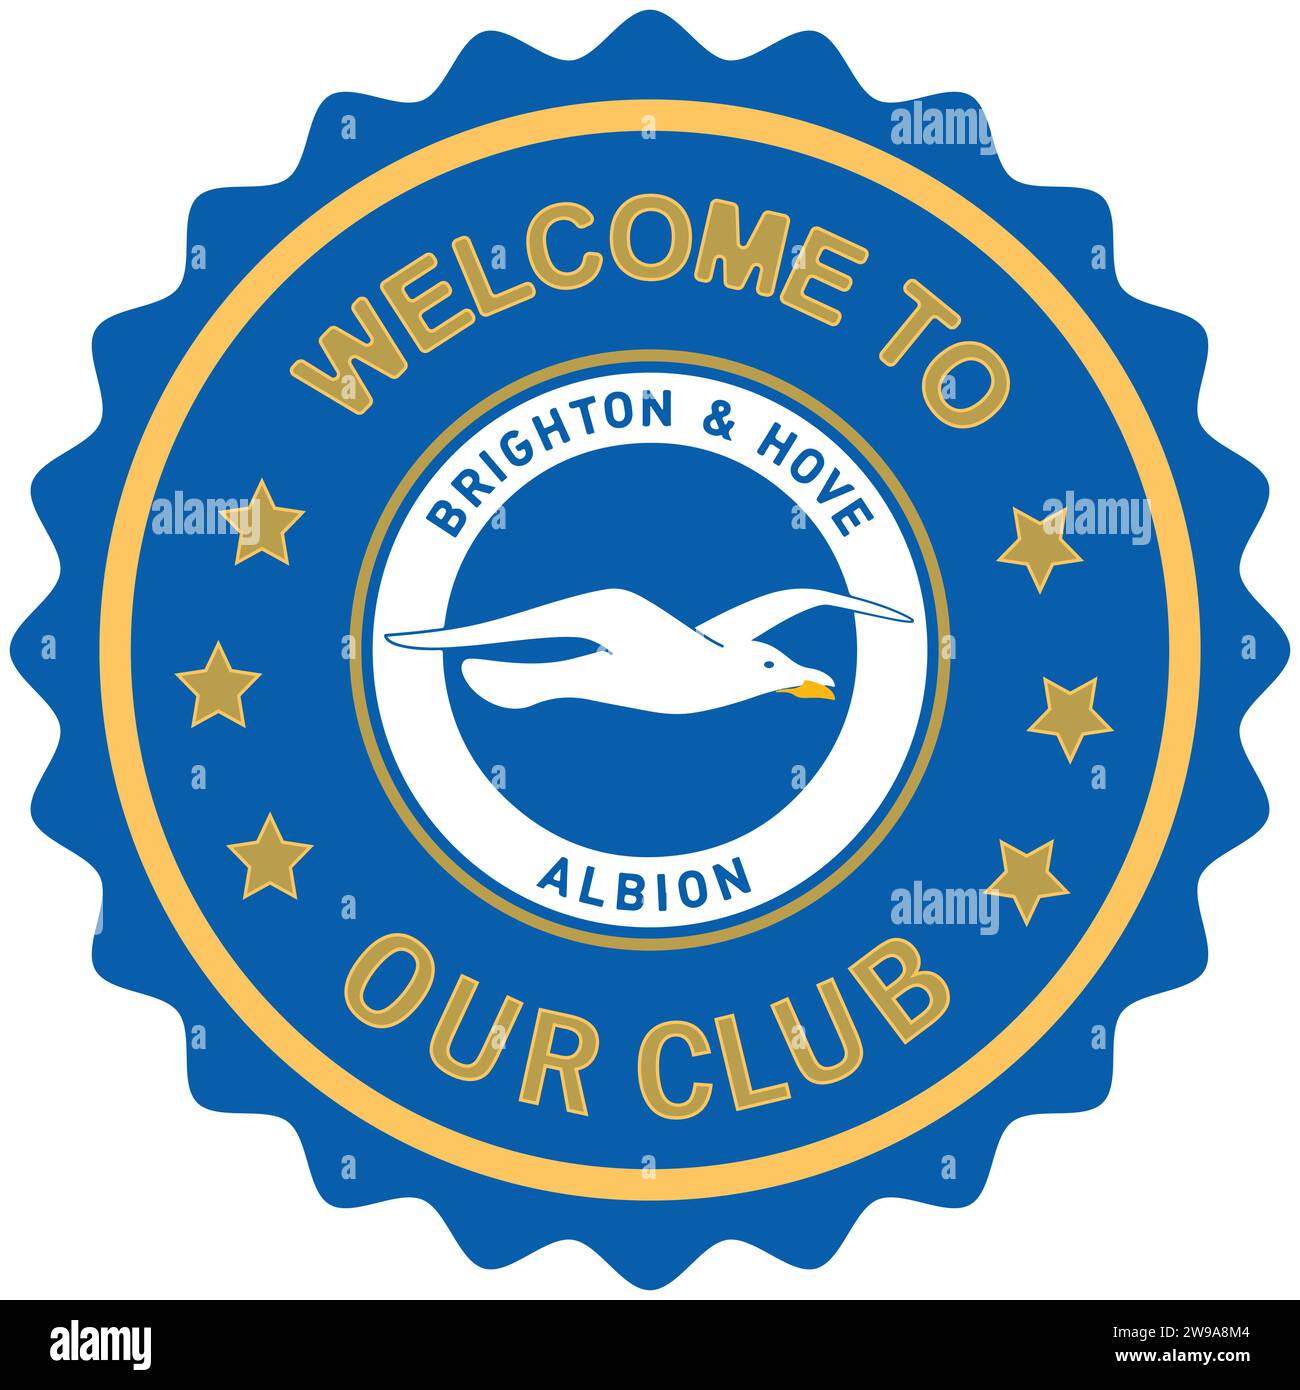 Benvenuto al Brighton and Hove Albion FC, il timbro colorato e il sigillo della squadra di calcio professionistica inglese Vector Illustration Abstract Editable image Illustrazione Vettoriale